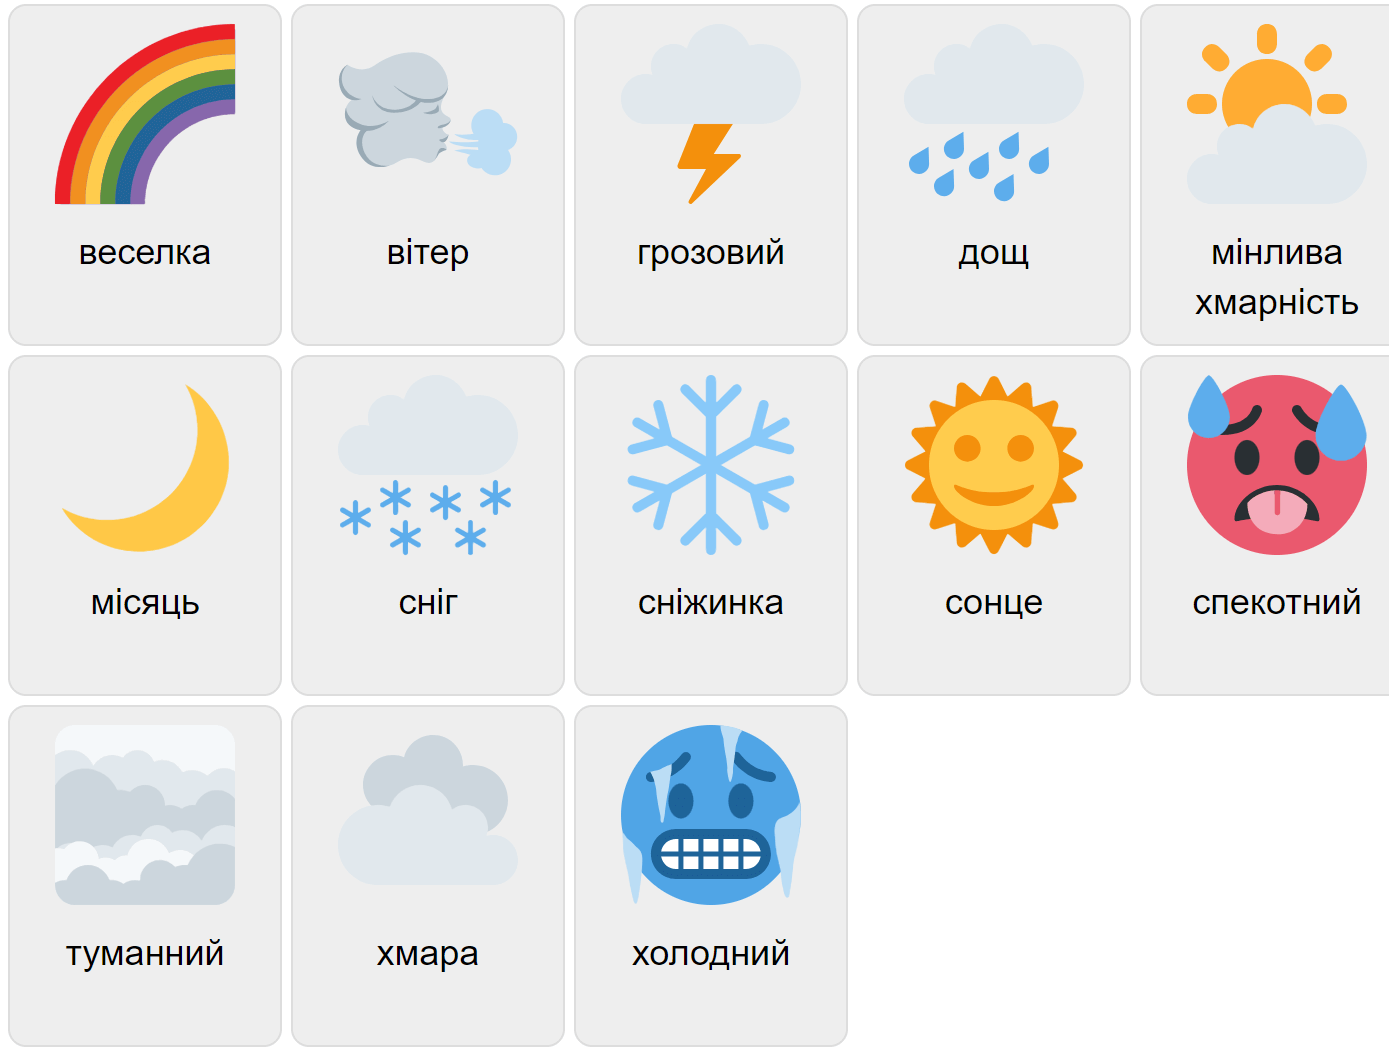 Weather in Ukrainian